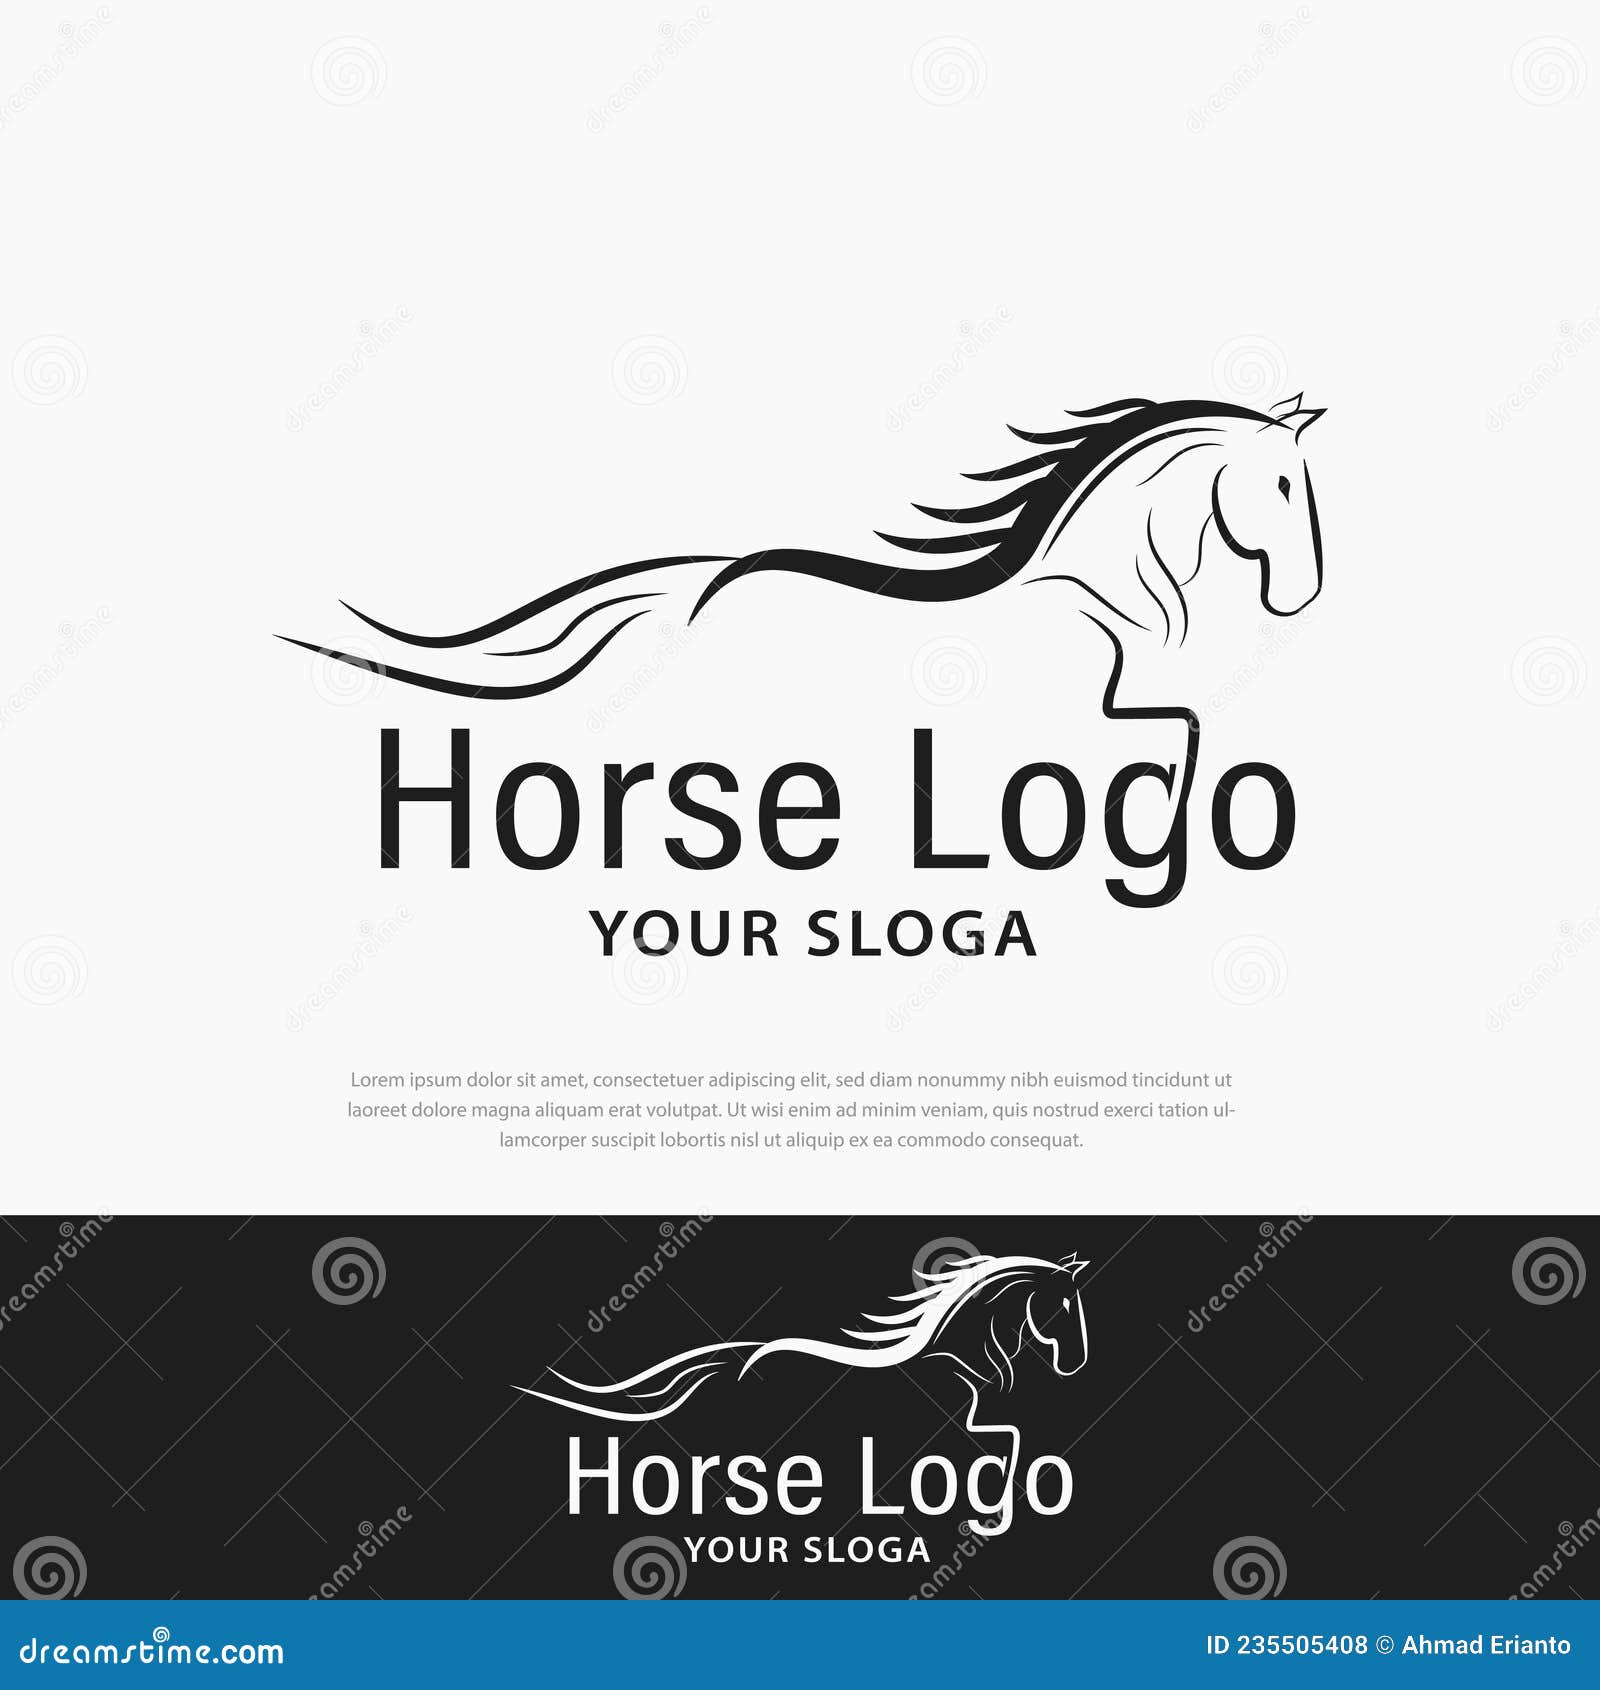 Inspiração de design de logotipo de silhueta de cavalo de xadrez preto